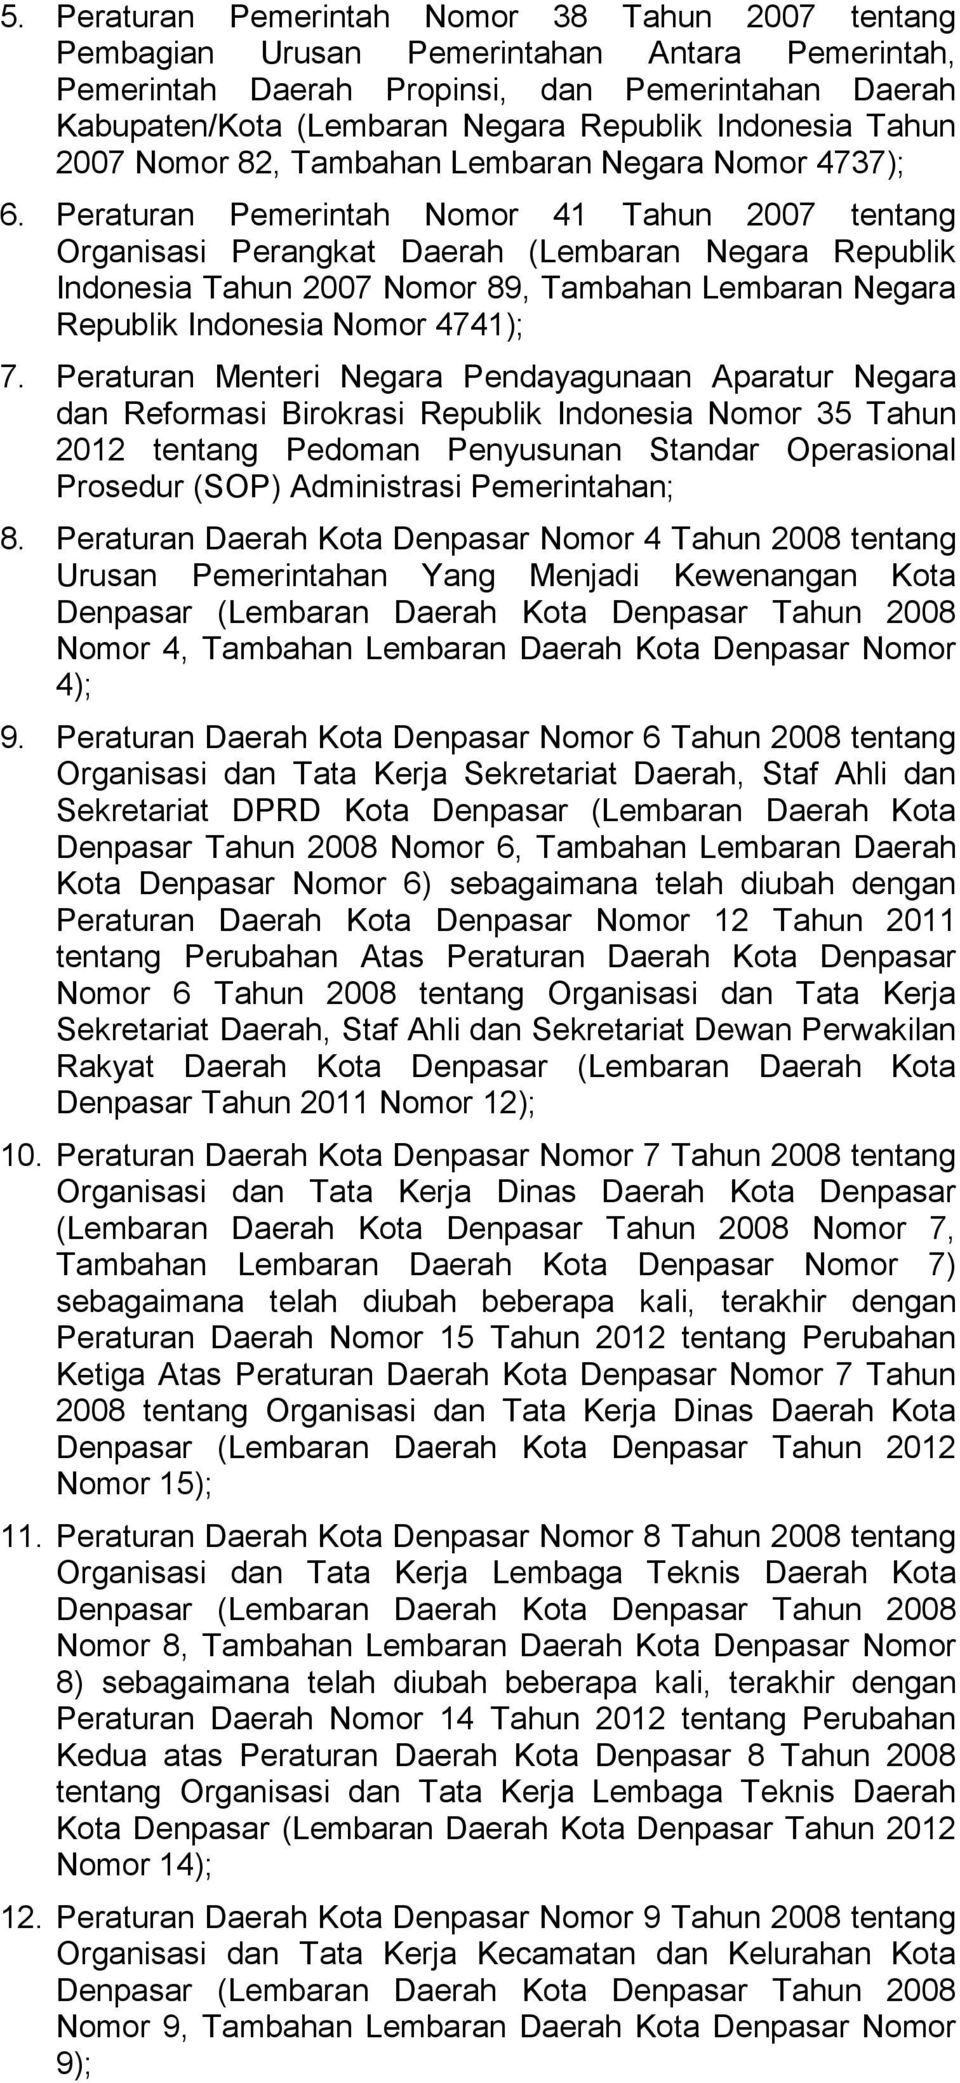 Peraturan Pemerintah Nomor 41 Tahun 2007 tentang Organisasi Perangkat Daerah (Lembaran Negara Republik Indonesia Tahun 2007 Nomor 89, Tambahan Lembaran Negara Republik Indonesia Nomor 4741); 7.